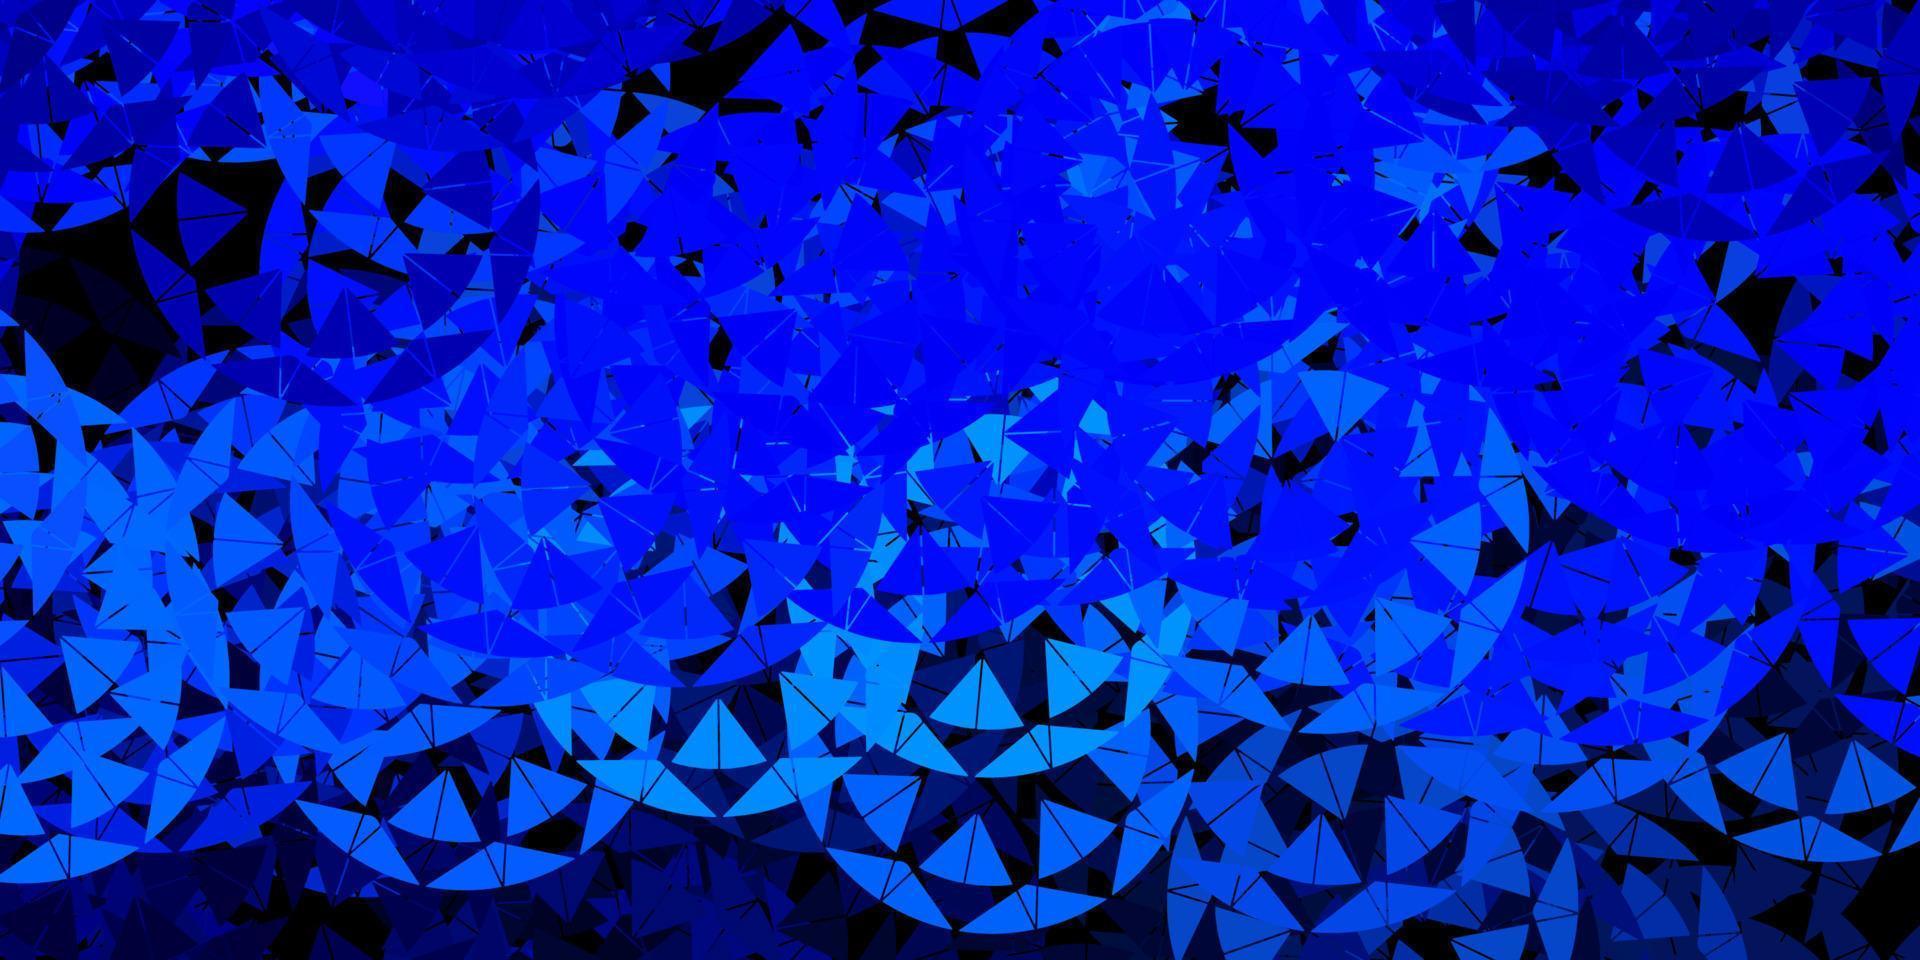 sfondo vettoriale blu scuro con triangoli, linee.